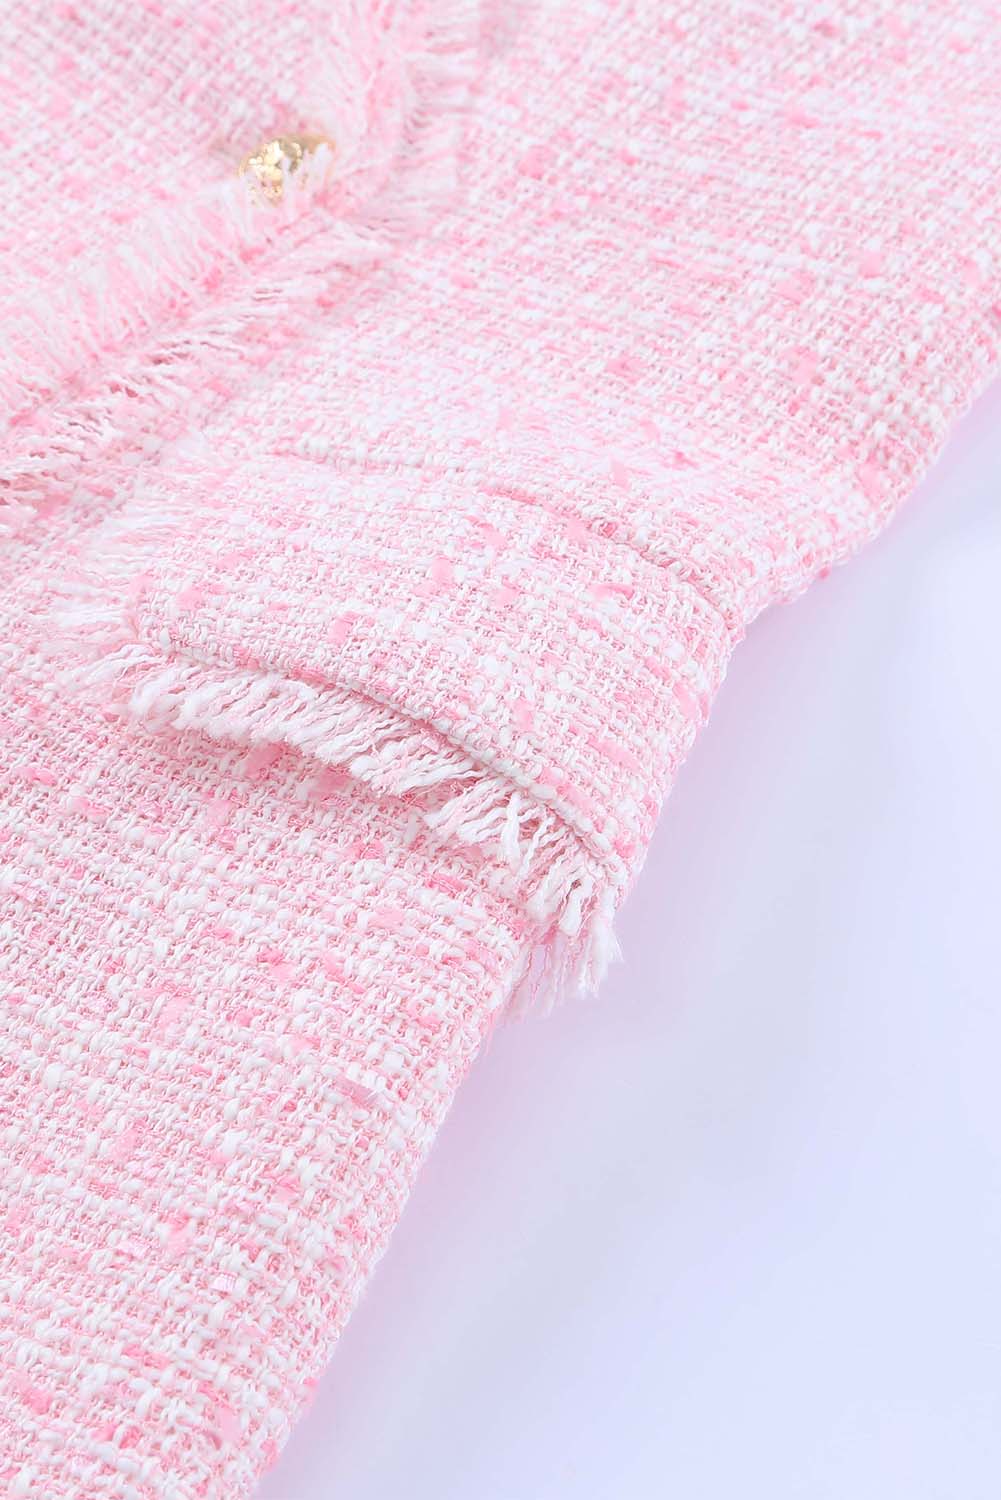 Rožnata obleka brez rokavov iz tvida z dvojnim zapenjanjem in polomljenim robom